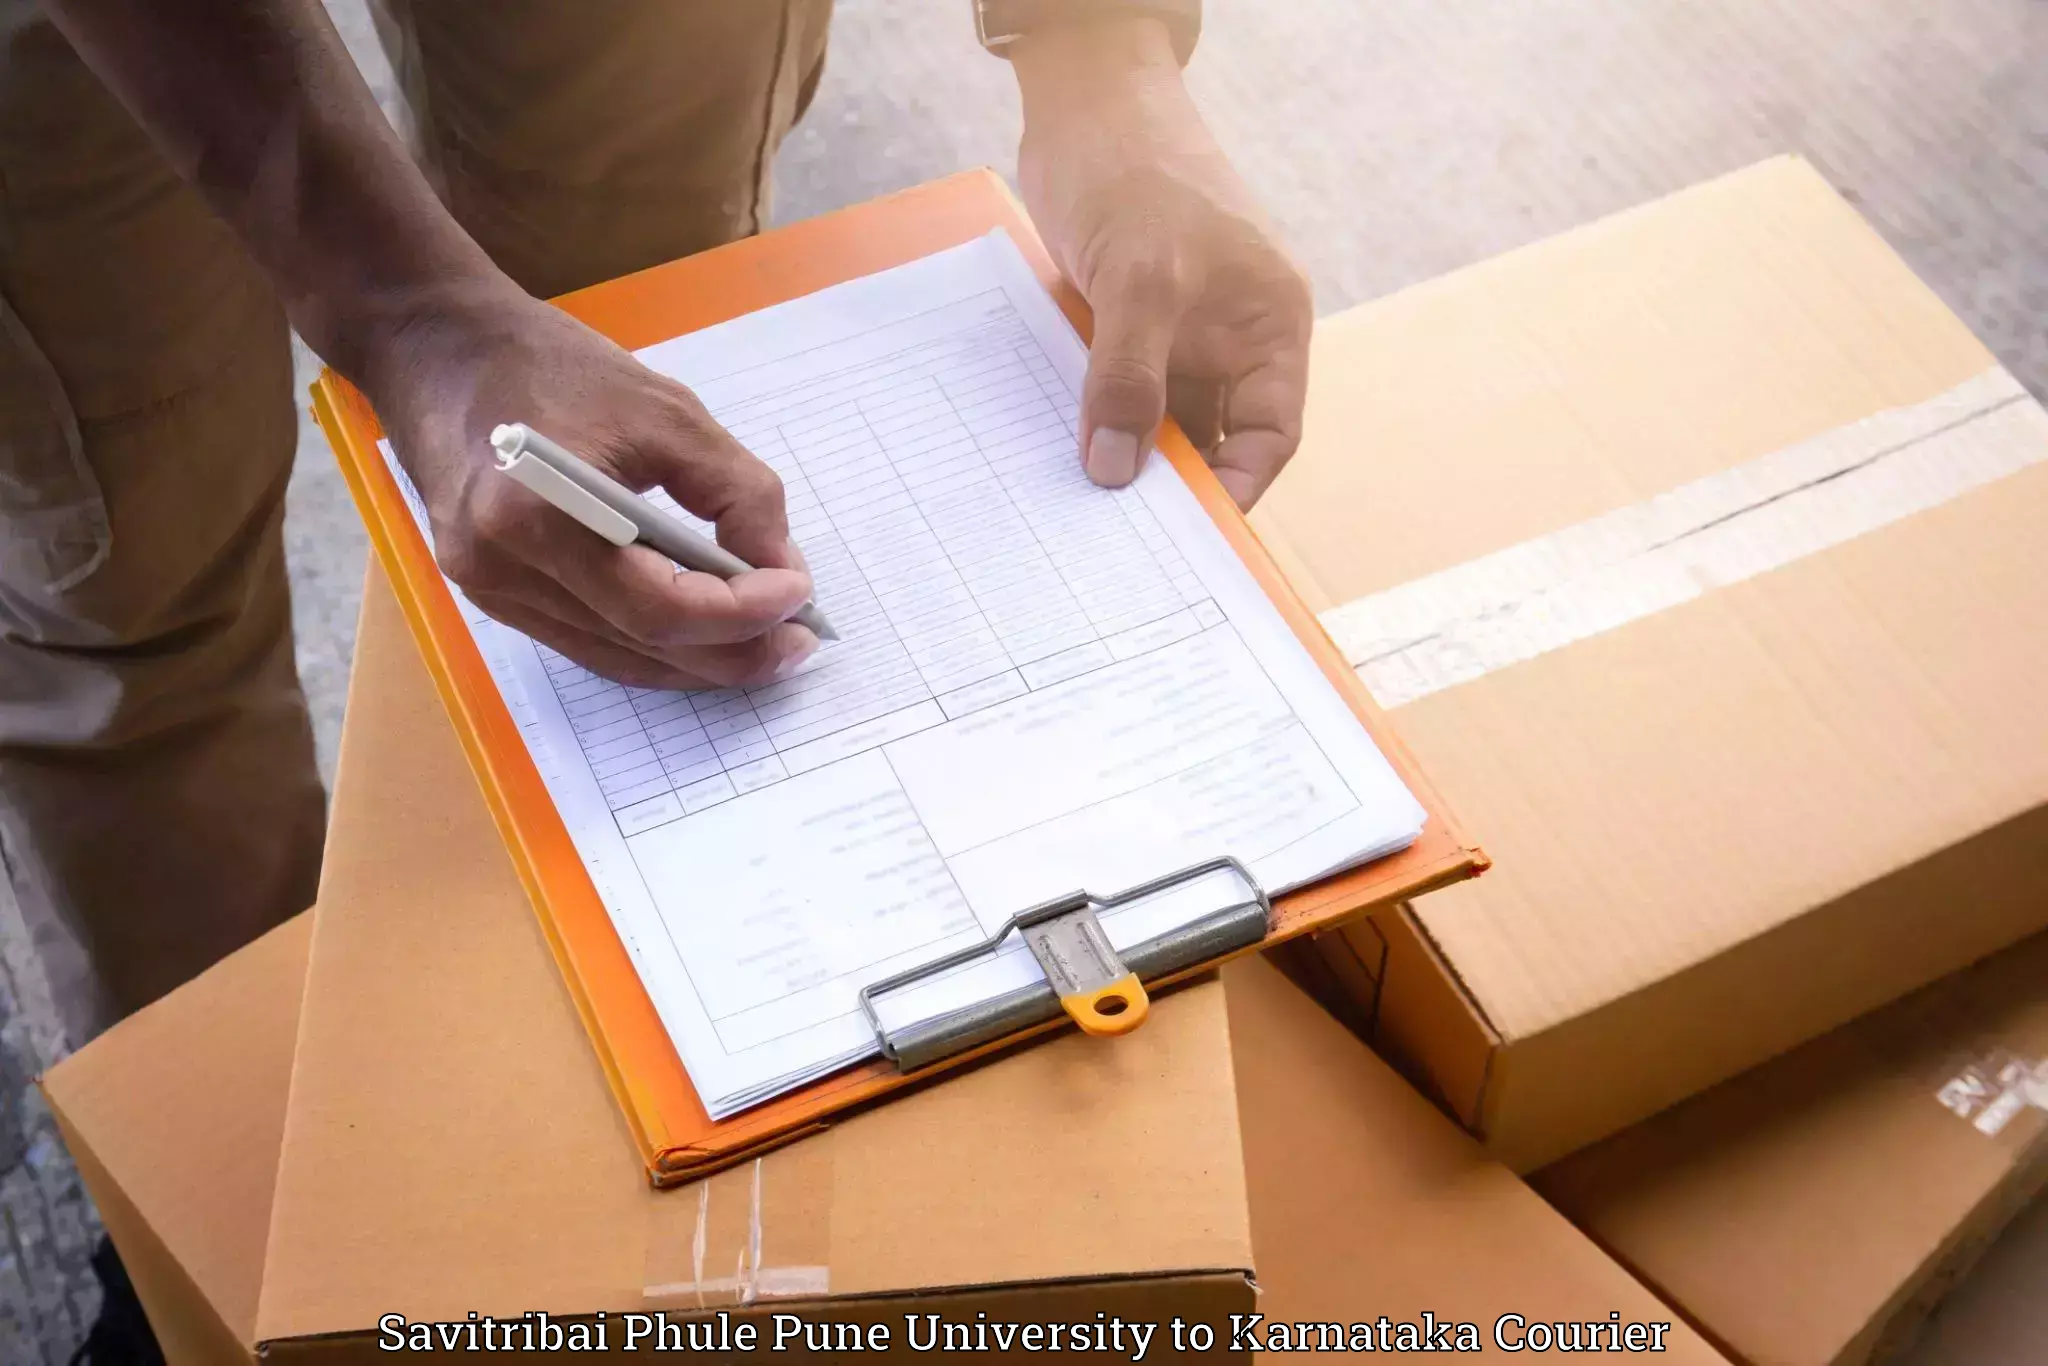 Professional furniture moving in Savitribai Phule Pune University to Karnataka